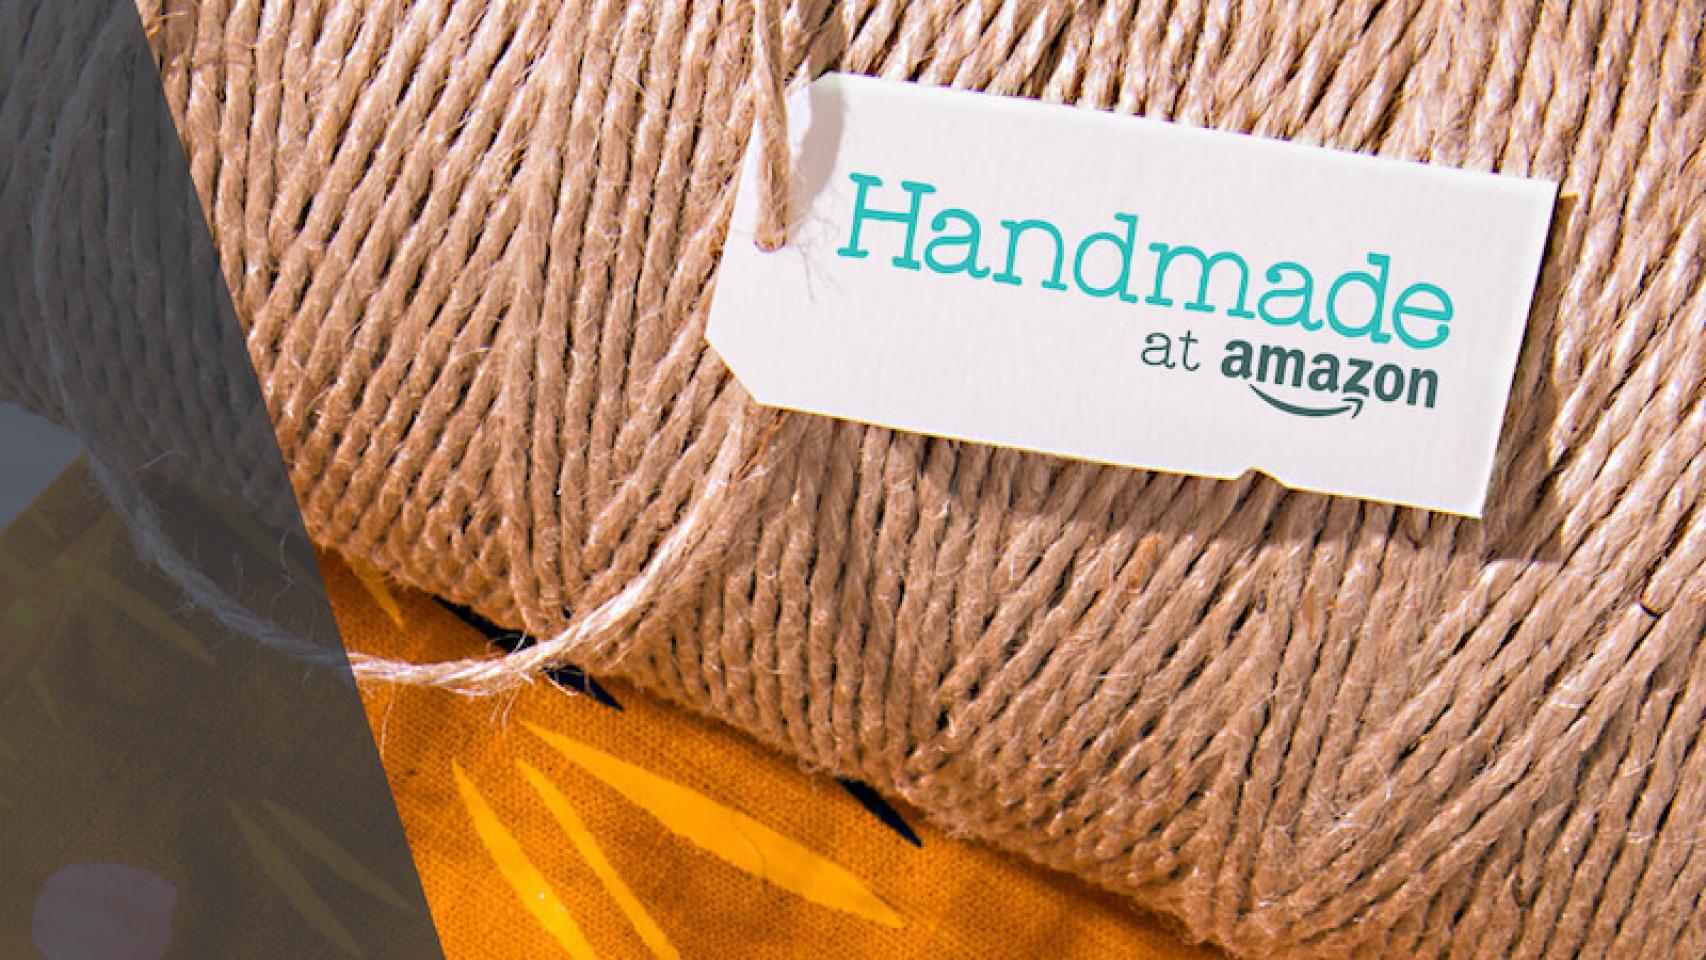 Amazon Handmade, la nueva tienda de productos artesanales